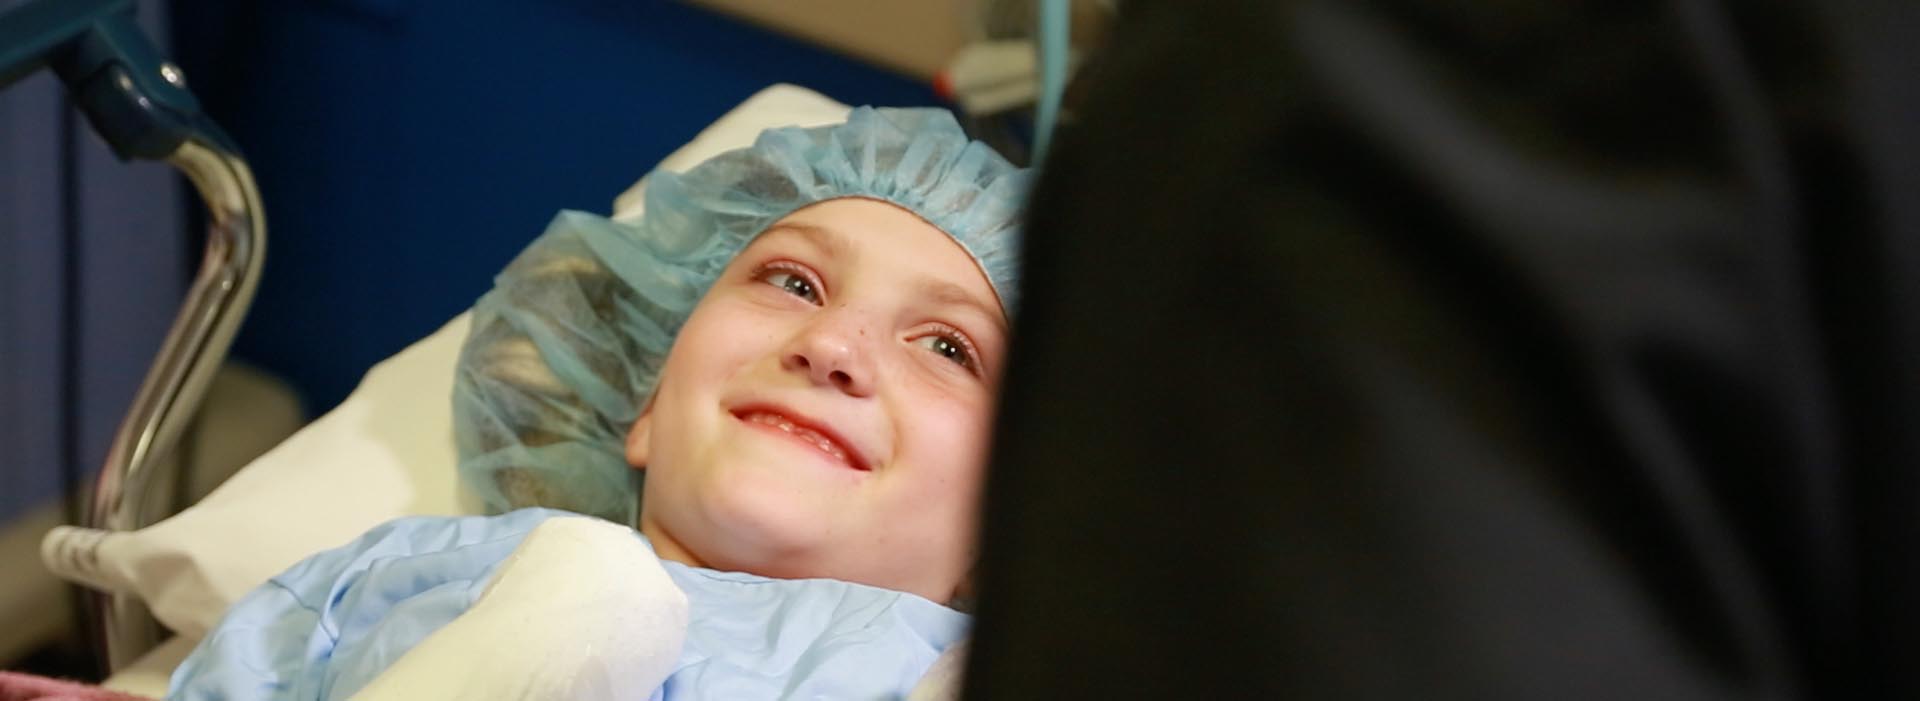 Um paciente criança sorri para alguém fora do quadro